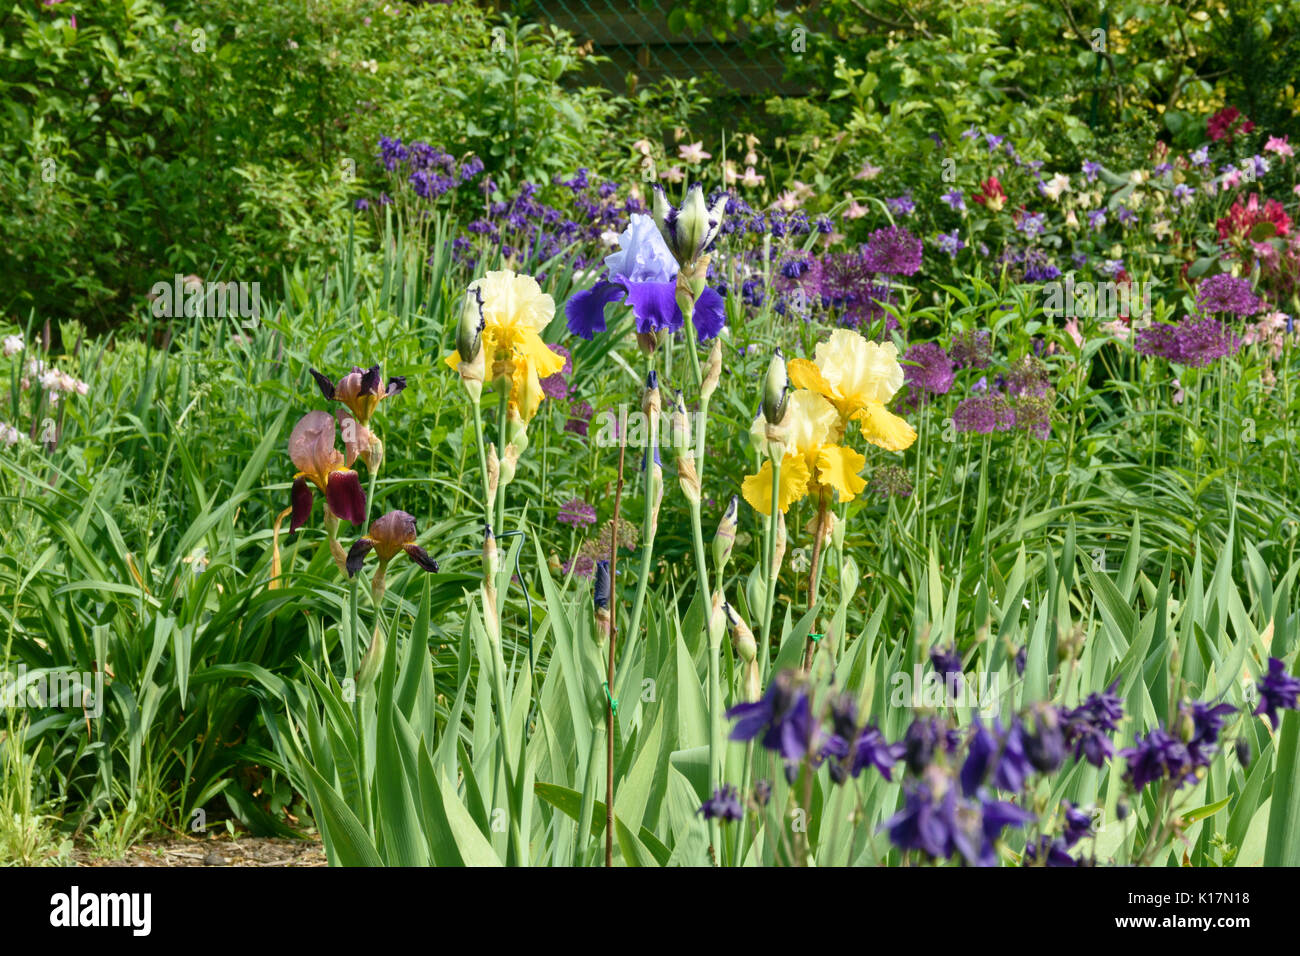 Bärtige Schwertlilien (Iris Lanceolata) und Zierpflanzen Zwiebeln (Allium). Stockfoto